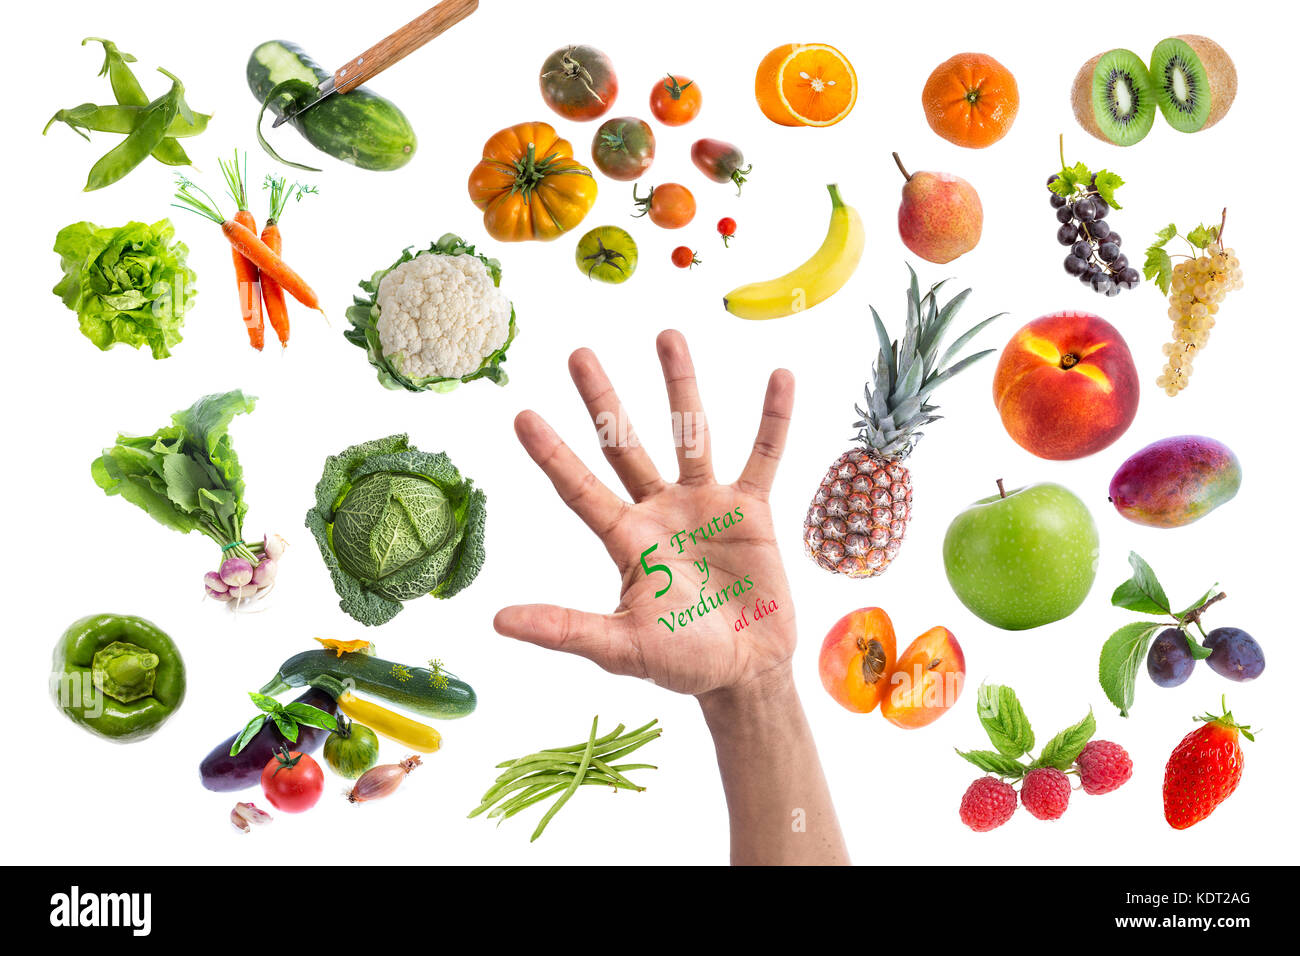 Concetto di cibo sano, vari frutti e verdure mangiare cinque volte al giorno scritto in una mano al centro su sfondo withte Foto Stock